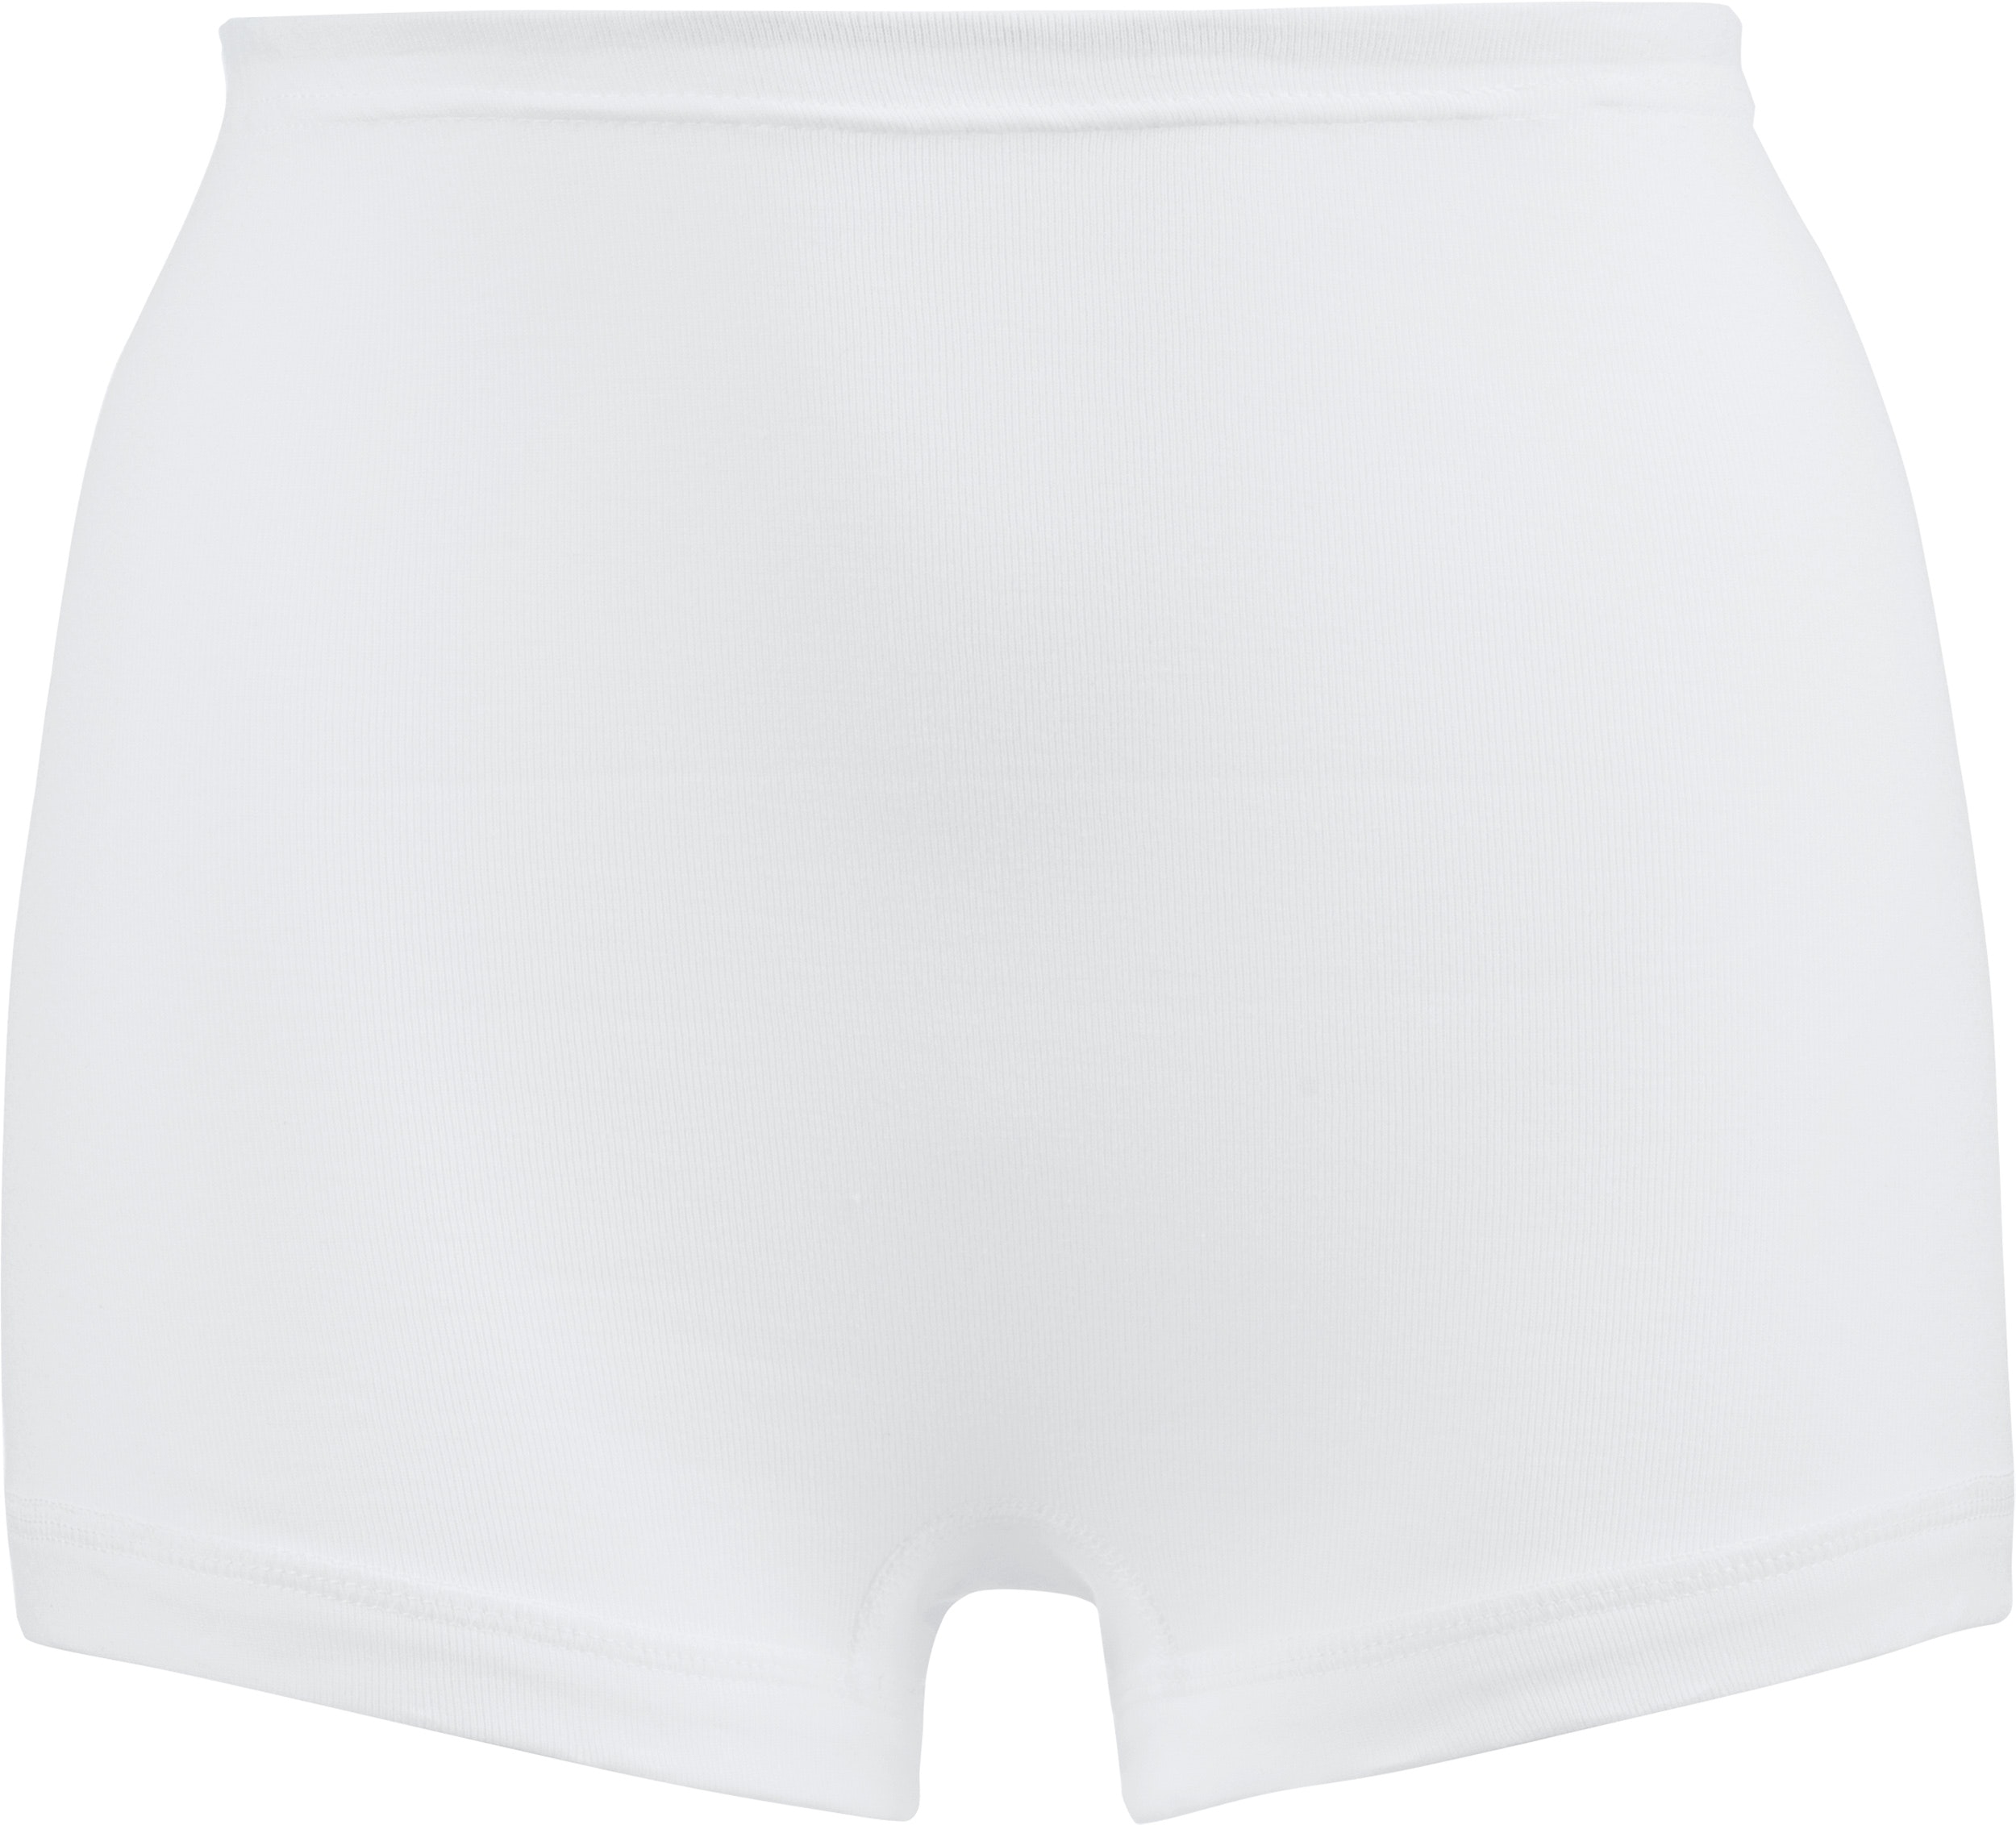 Levně Dámské šortkové kalhotky Naturana 2201 bílé